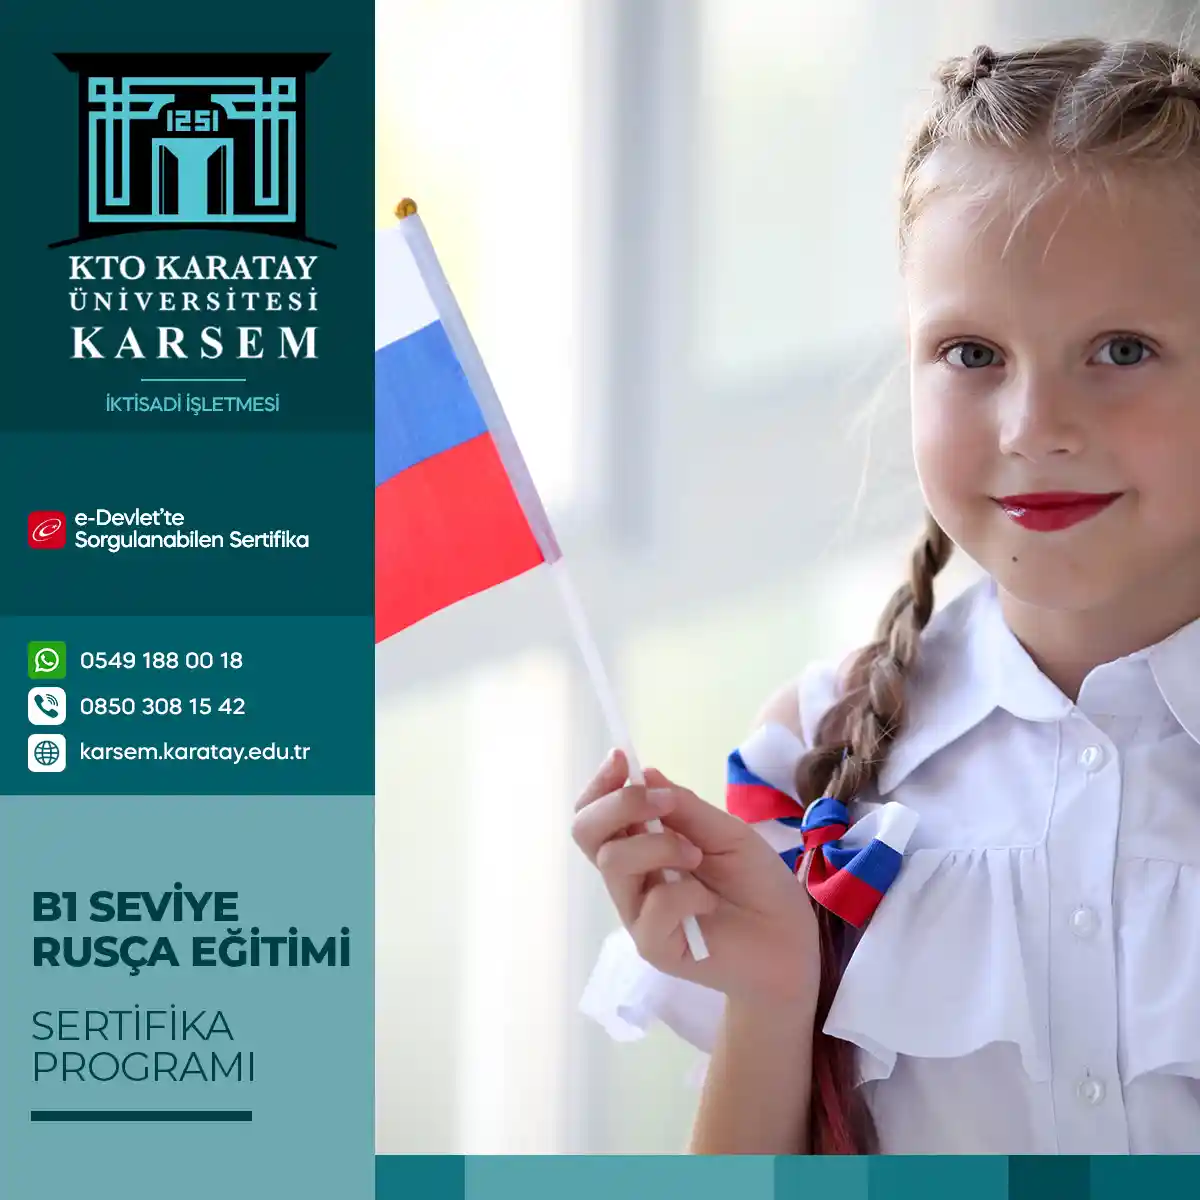 B1 Seviye Rusça Eğitimi Sertifika Programı